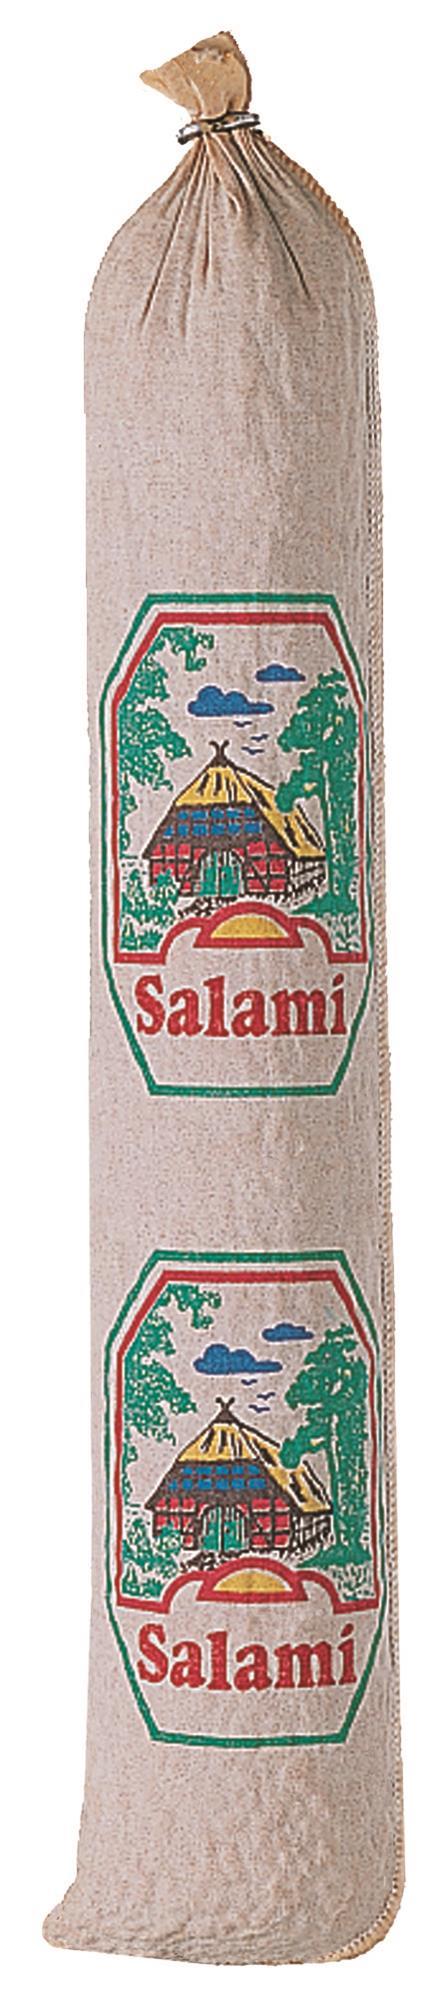 25 Stück Textildarm mit Druck "Salami" 60/40